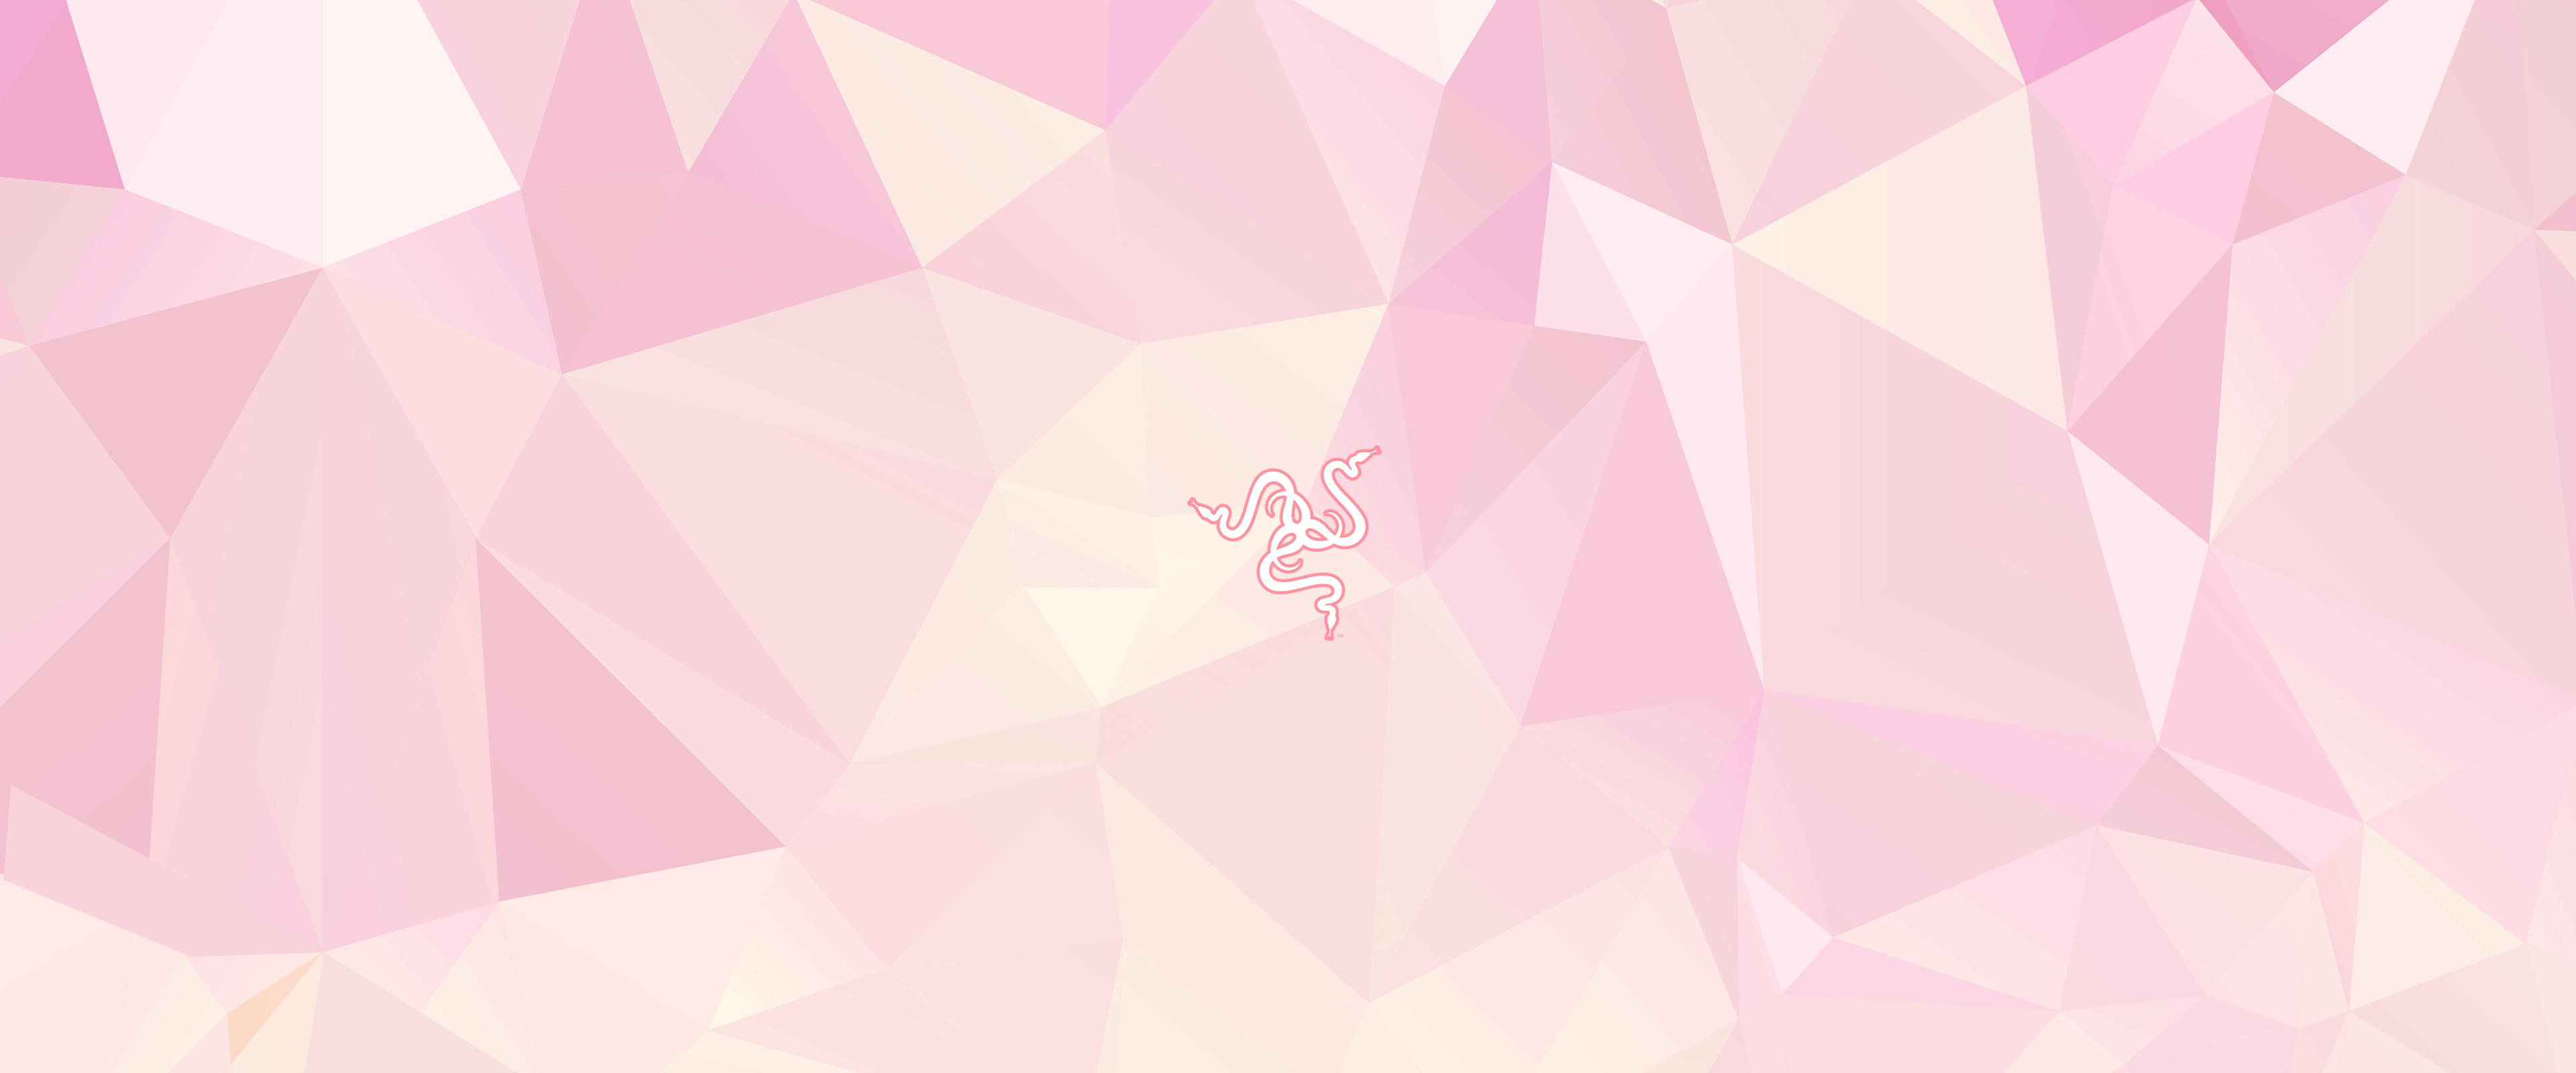 Nền tảng Razer màu hồng girly sẽ mang đến cho bạn sự phấn khích khi sử dụng máy tính. Trông vô cùng dễ thương và nữ tính, nó sẽ khiến màn hình của bạn trở nên cuốn hút hơn bao giờ hết!